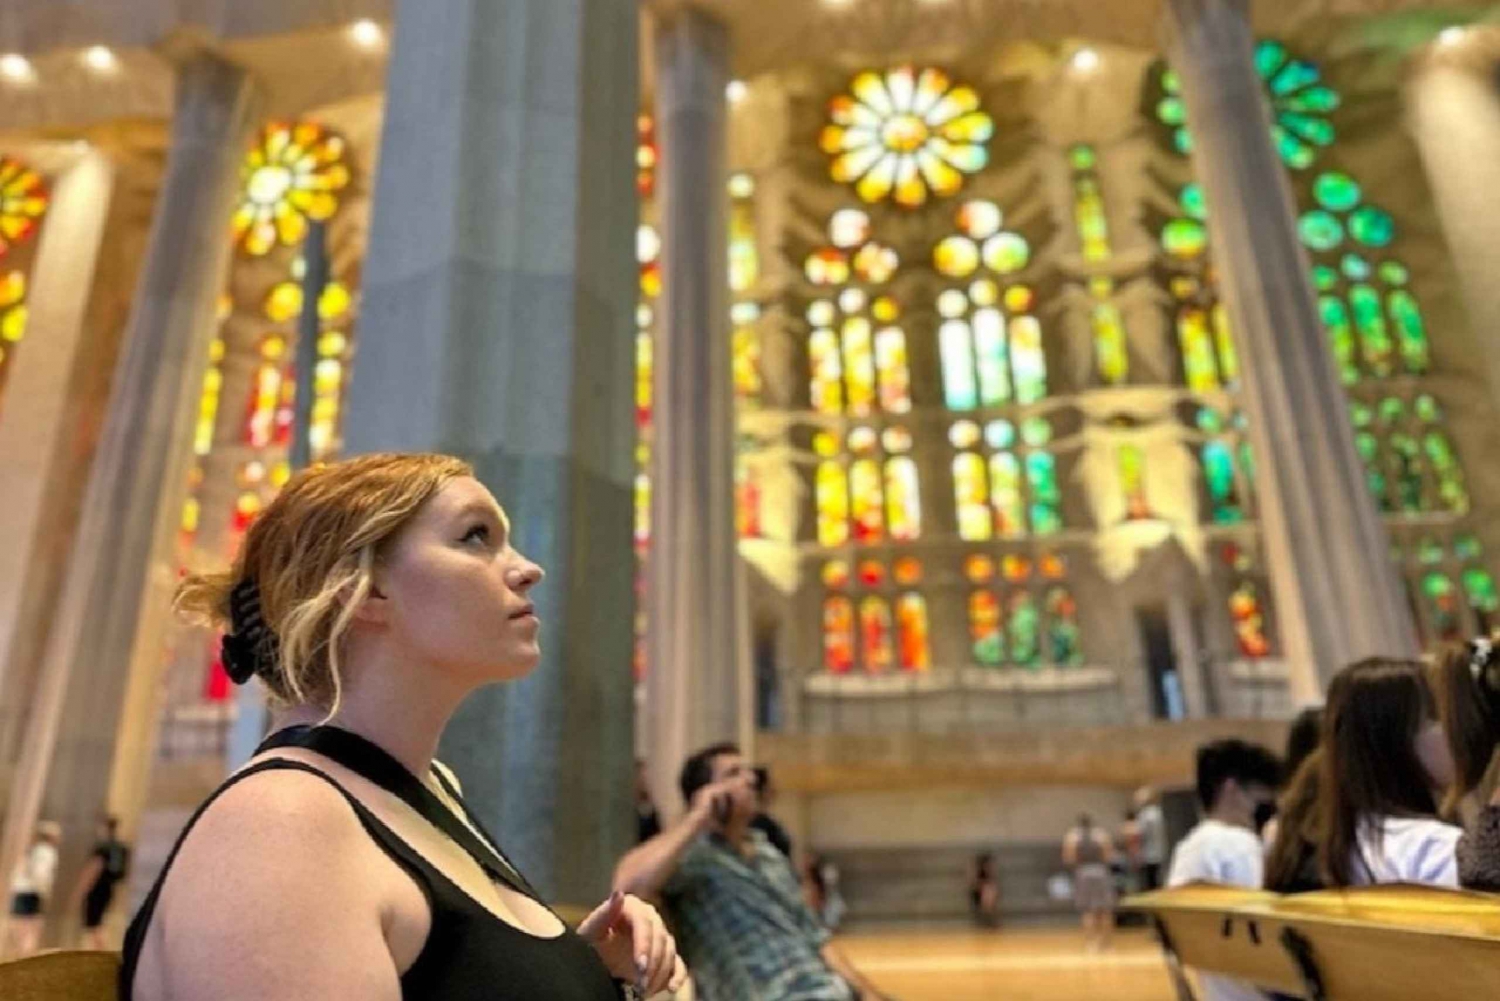 Barcelona: Omvisning i Sagrada Família med Skip-the-Line-tilgang